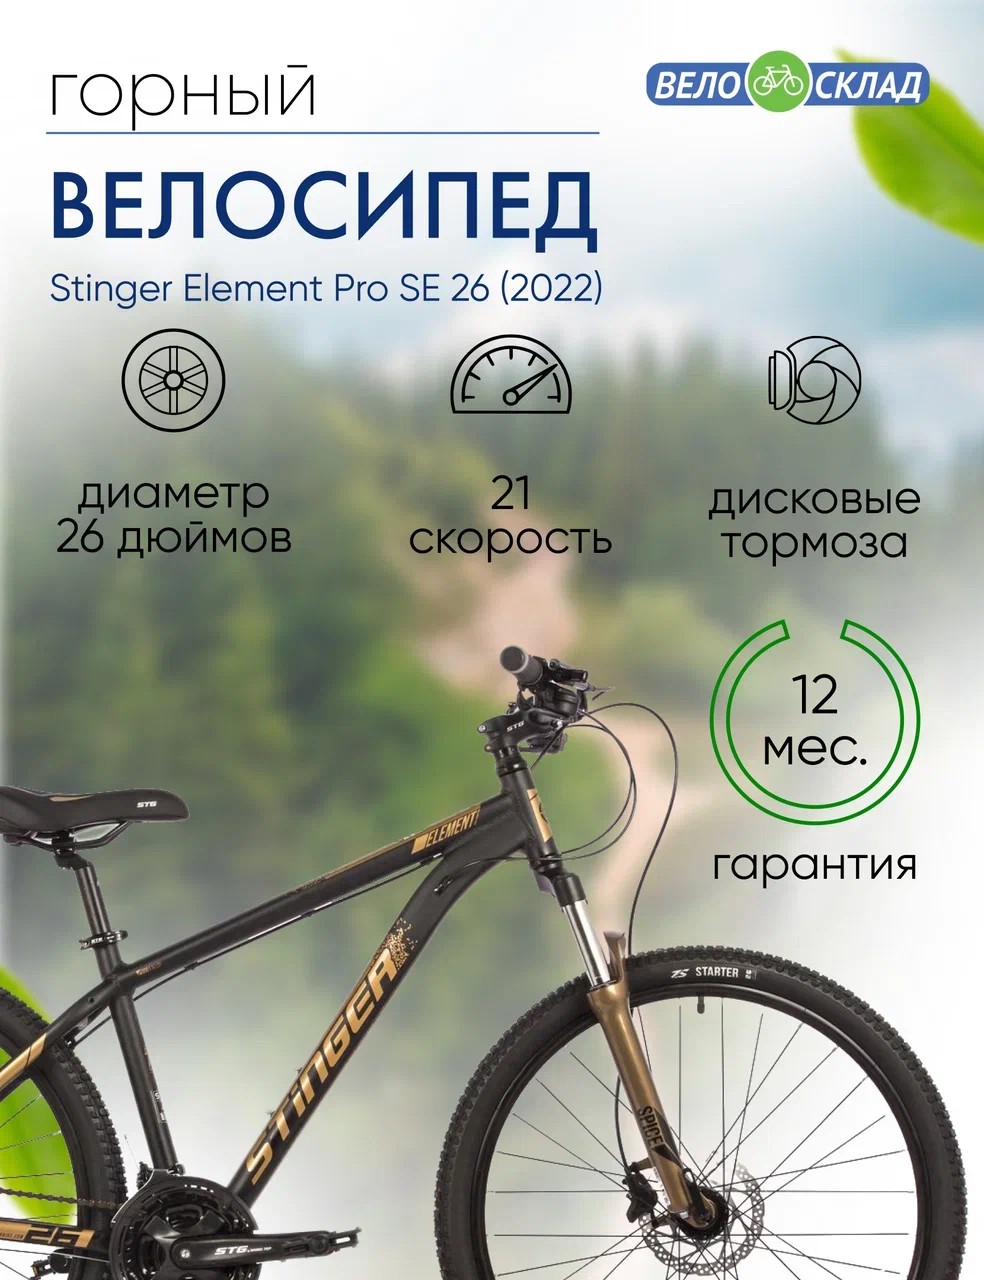 Горный велосипед Stinger Element Pro SE 26, год 2022, цвет Желтый, ростовка 18